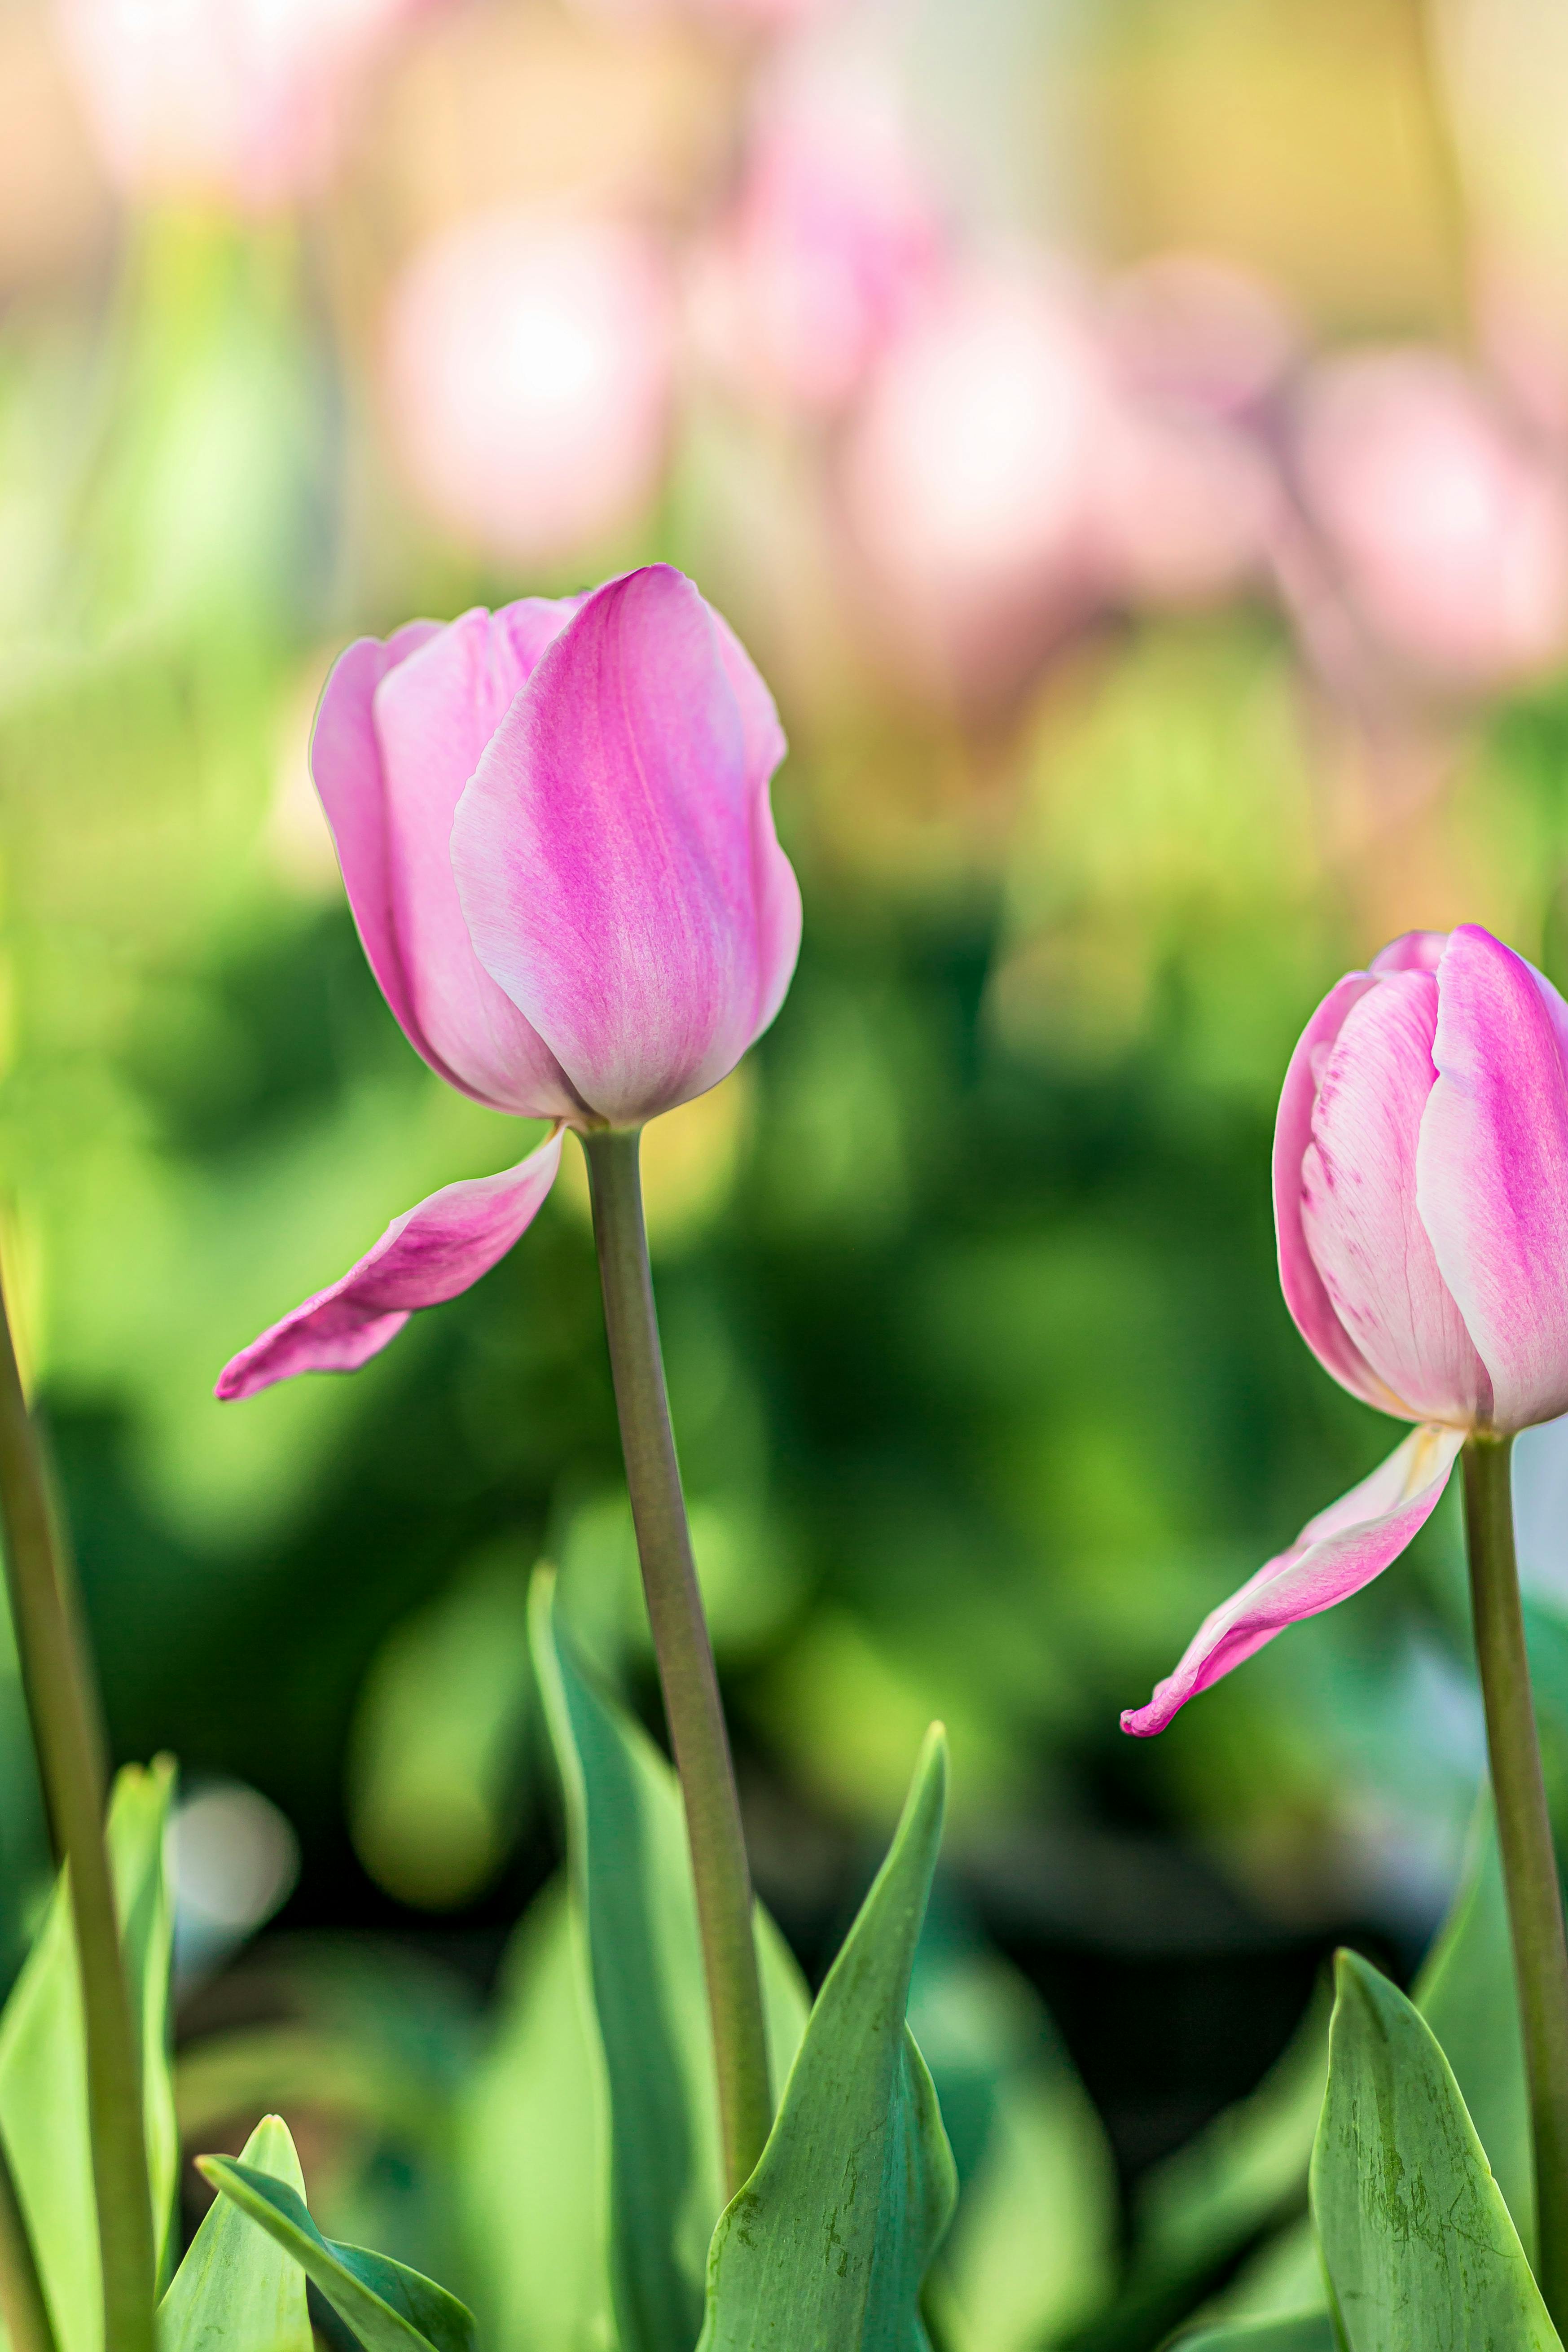 Hoa tulip là loại hoa kỳ diệu với hình dáng độc đáo và màu sắc đa dạng. Hãy tận hưởng khoảnh khắc tuyệt vời khi chiêm ngưỡng những đóa tulip rực rỡ.